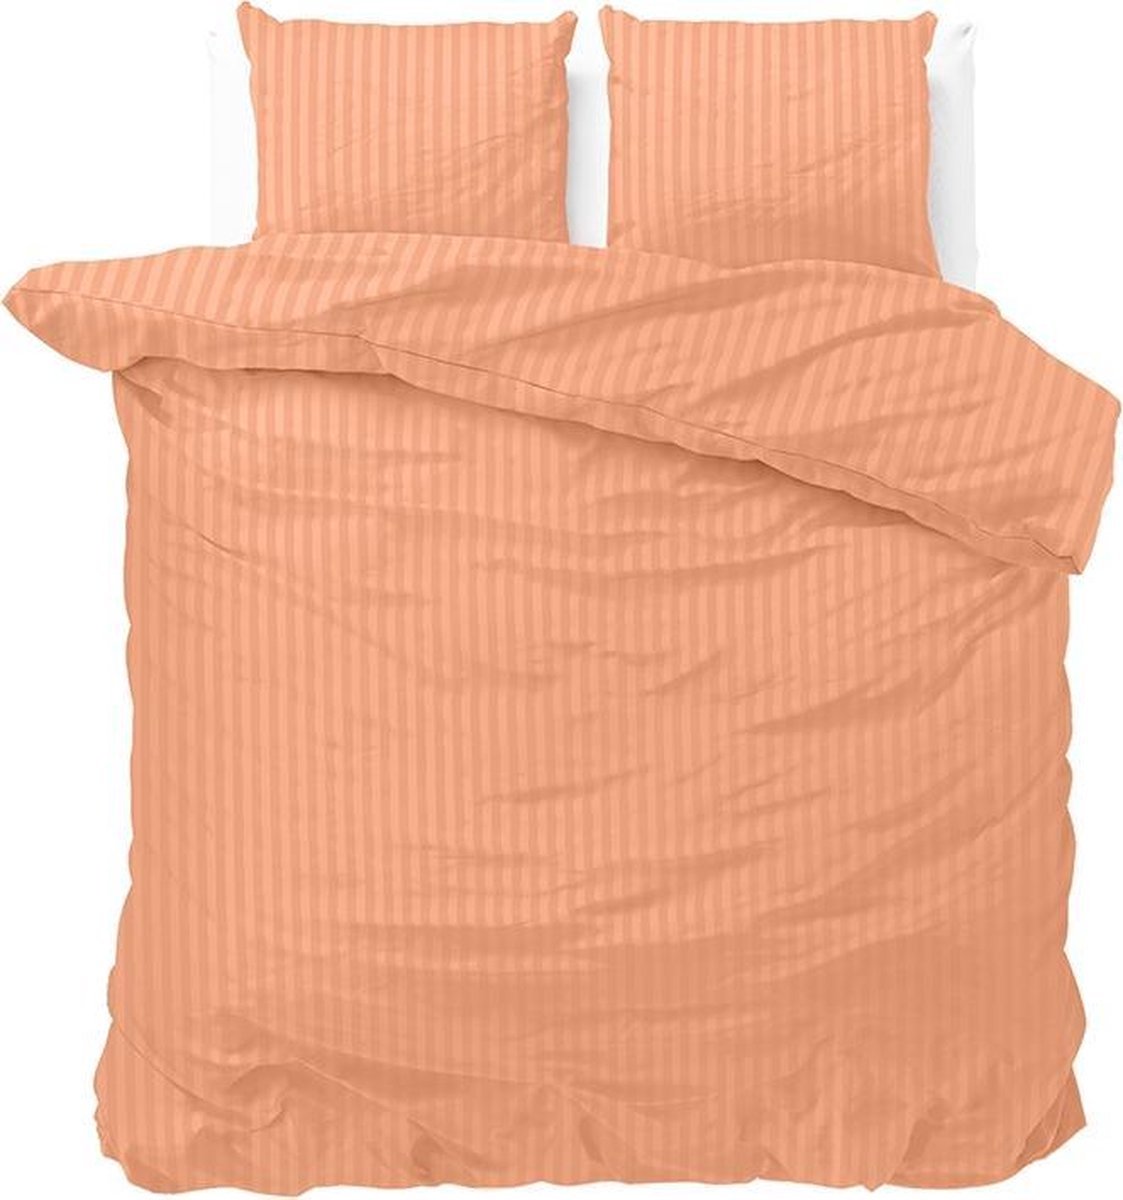 Luxe dekbedovertrek Stripes pastel oranje - 240x200/220 (lits-jumeaux) - zacht en fijne kwaliteit - stijlvolle uitstraling - met handige drukknopen